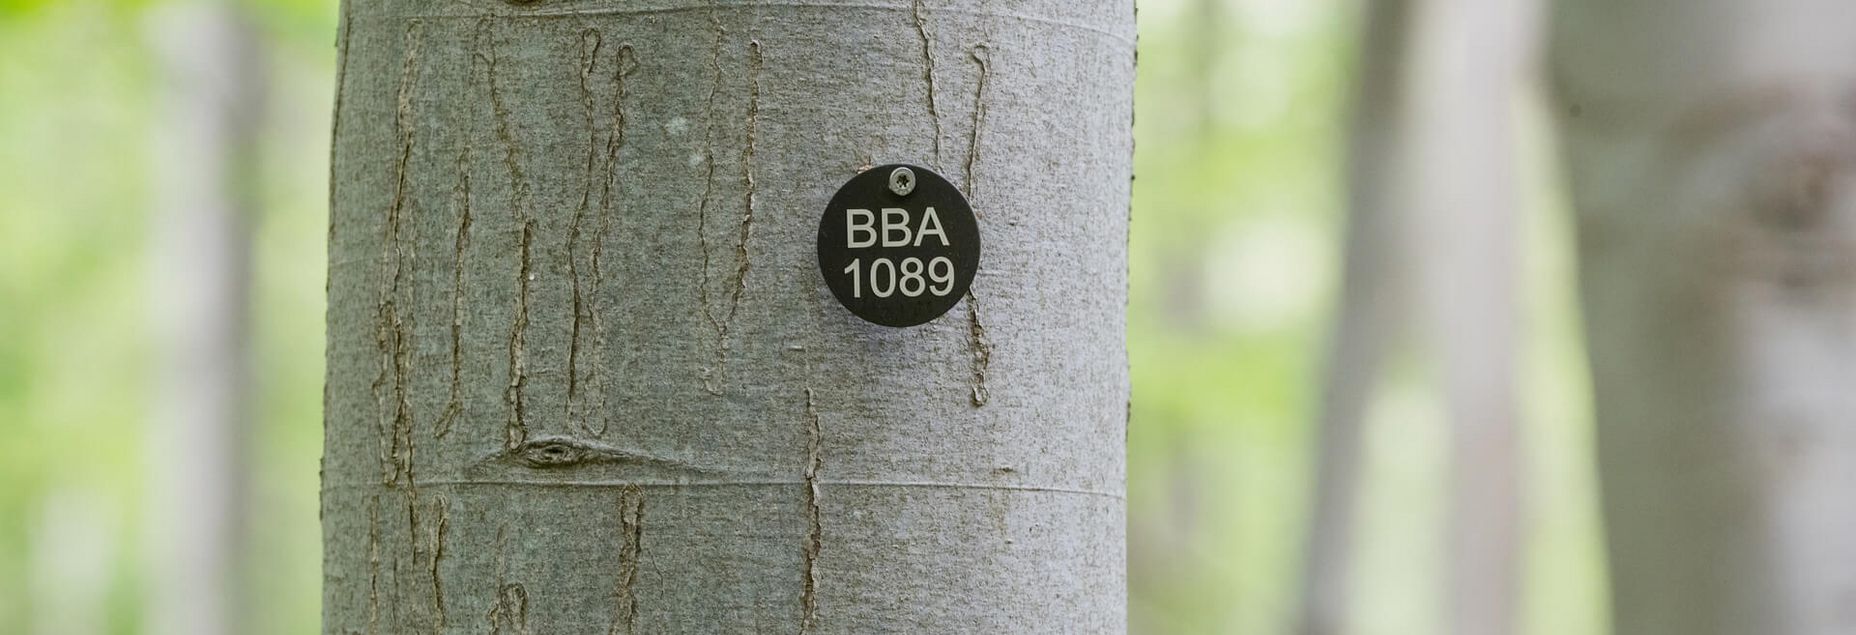 Baum BBA 1089 - Plakette